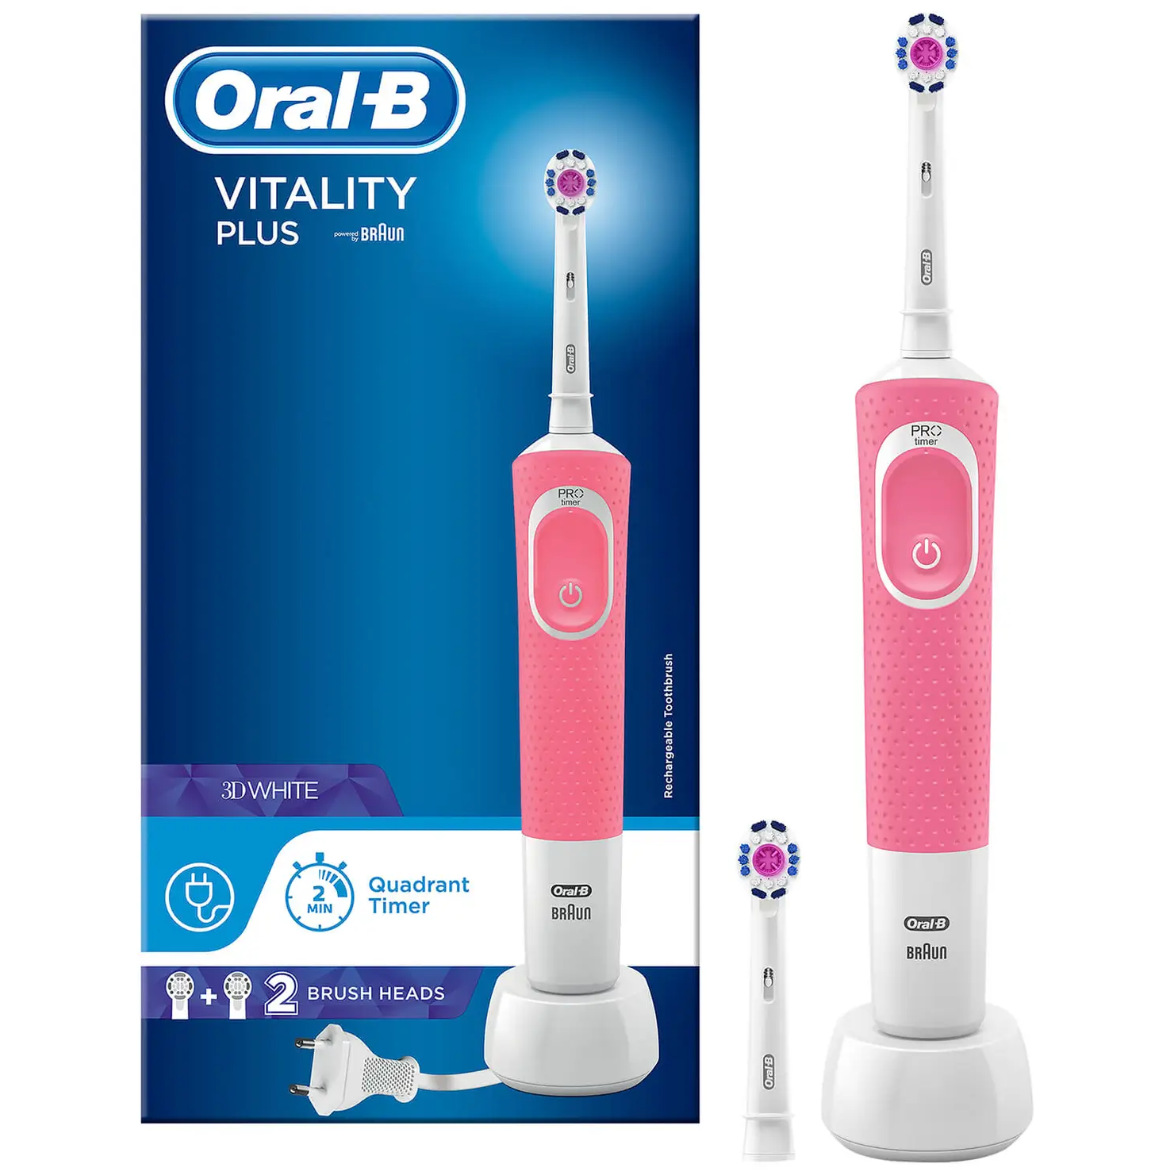 保持好莱坞式的灿烂笑容！Oral-B Vitality Plus电动牙刷